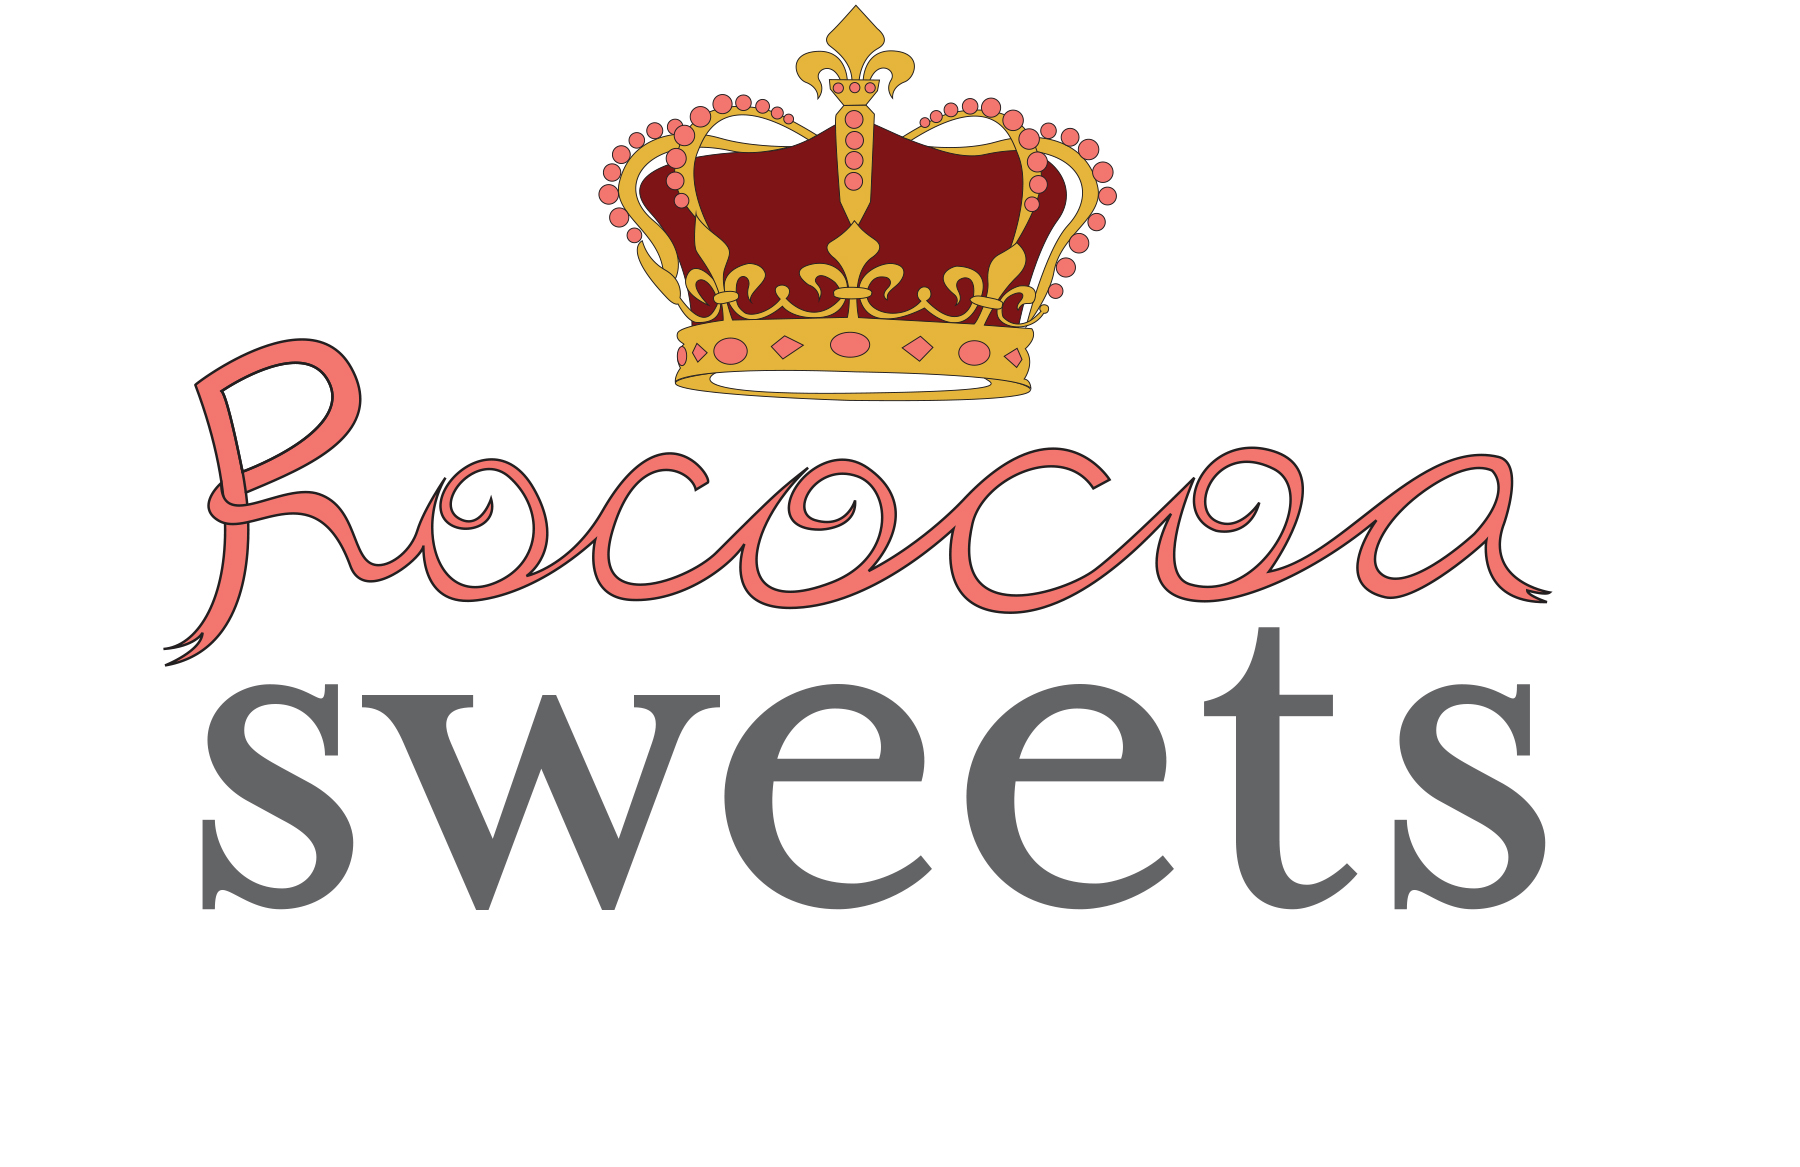 Rococoa Sweets logo